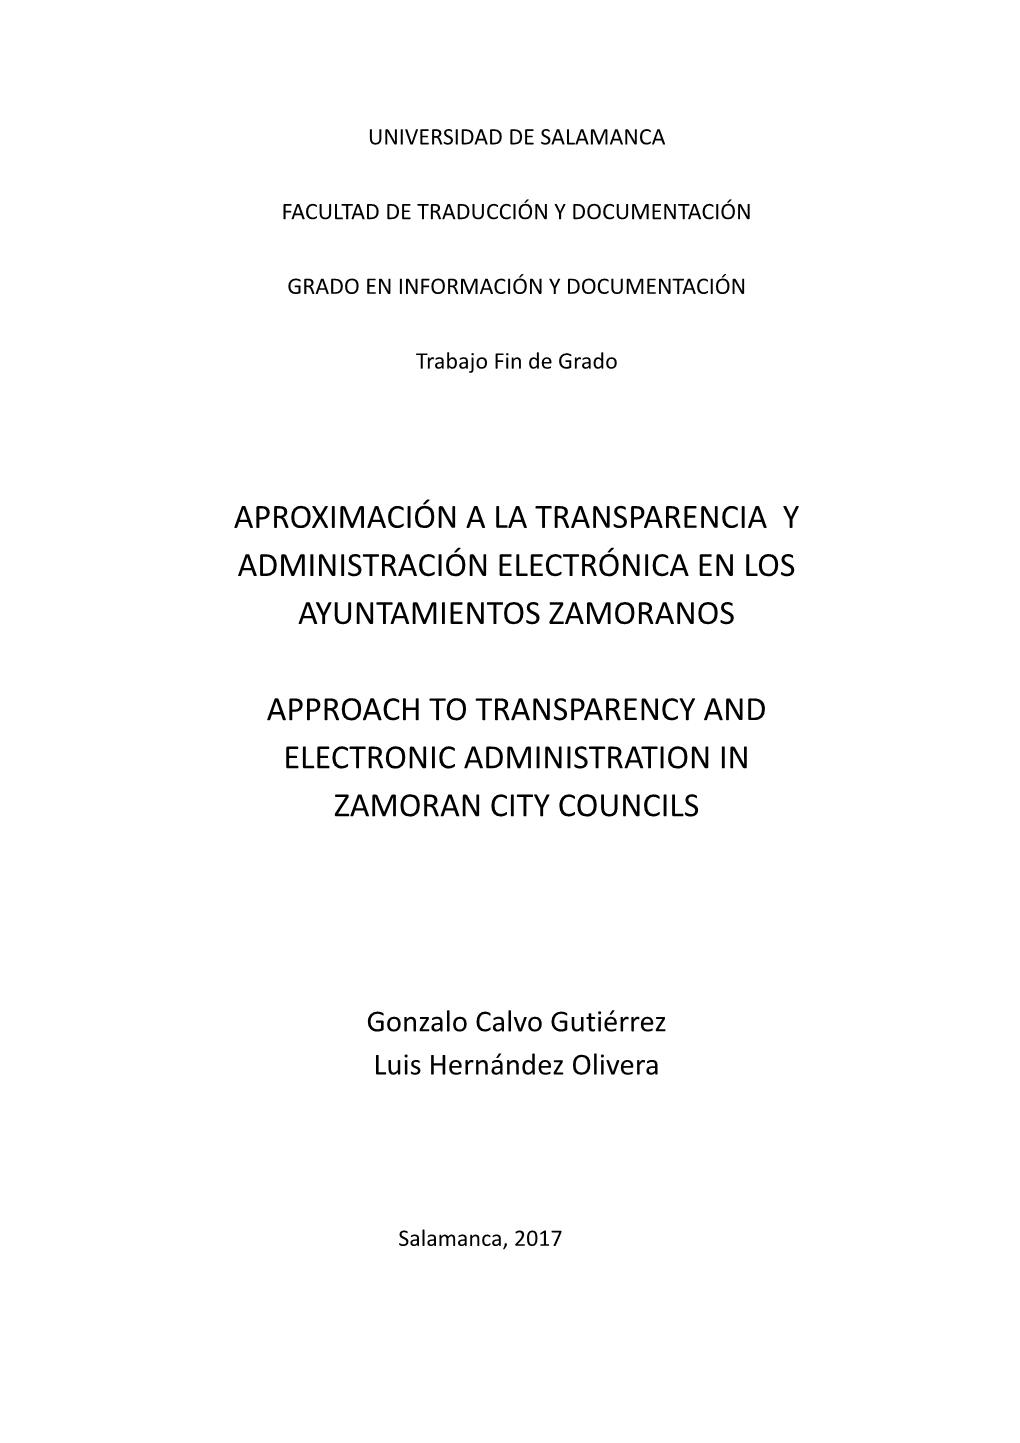 Aproximación a La Transparencia Y Administración Electrónica En Los Ayuntamientos Zamoranos Approach to Transparency And